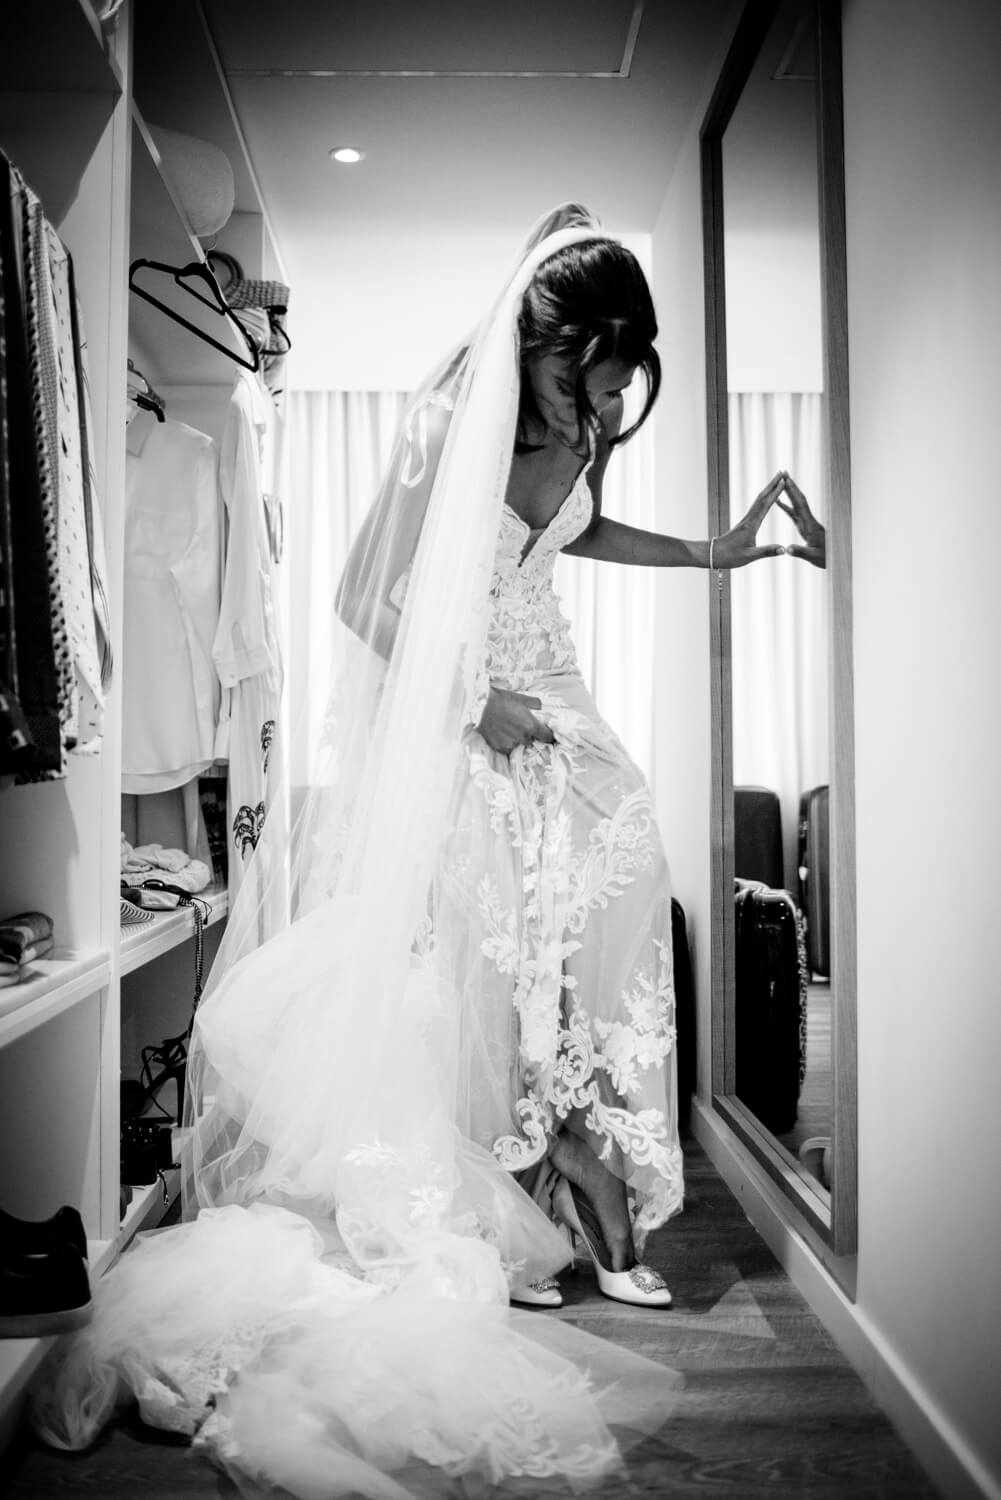 Ibiza Wedding Dress, monochrome BnW image